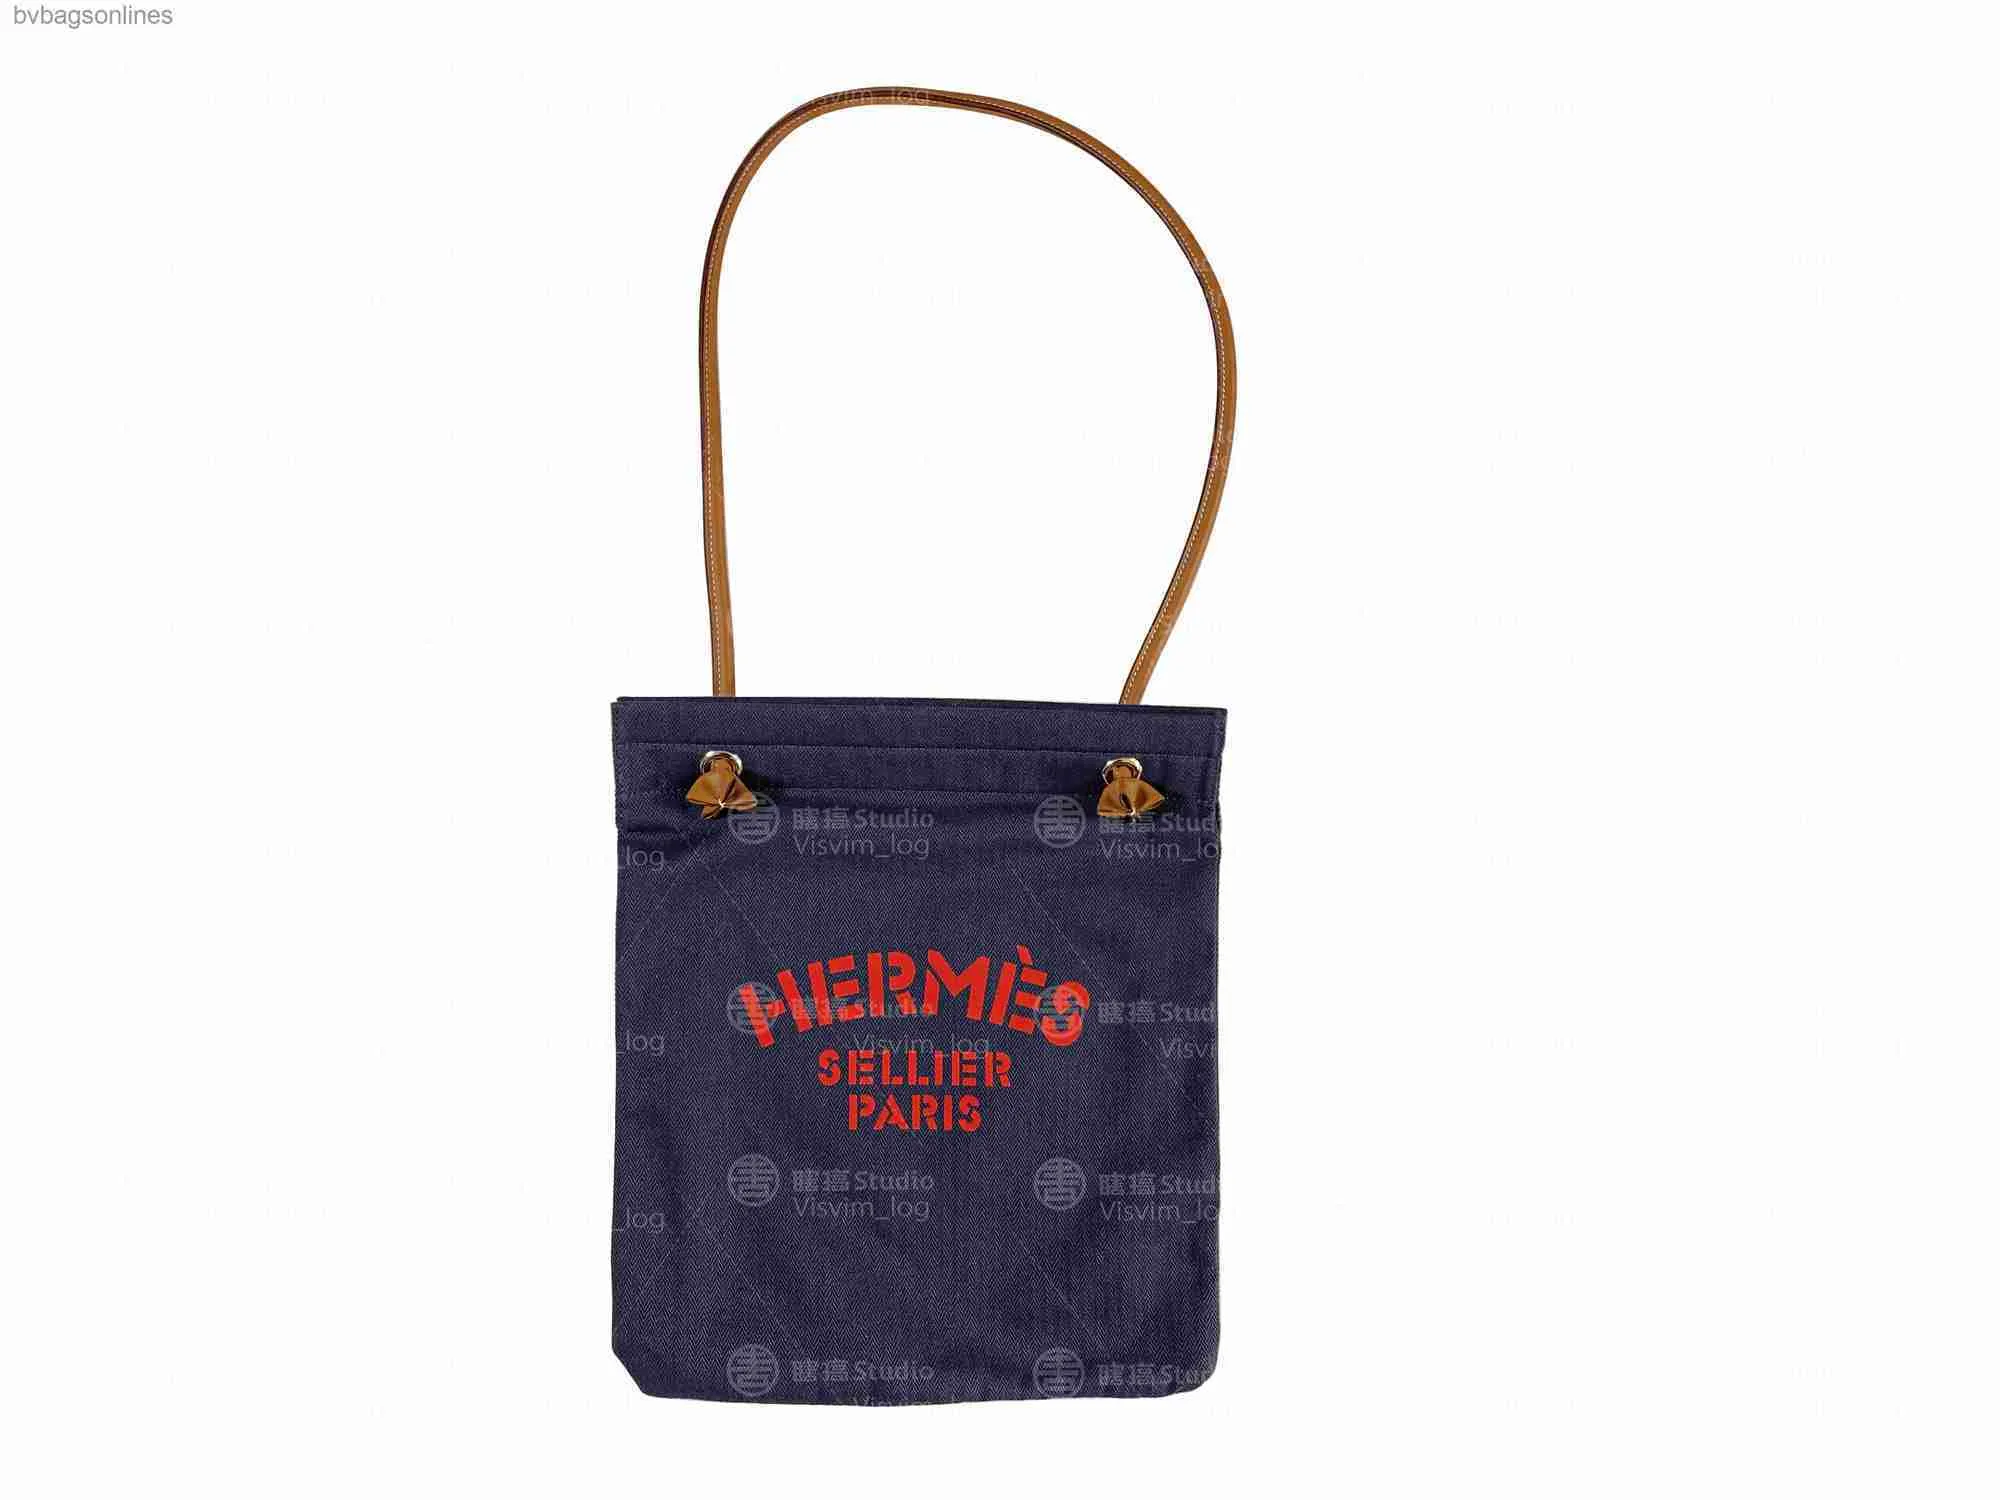 High Quality Original Hremms Logo Designer Bags for Women Canvas Aline Bag Handbag Shoulder Bag Bag